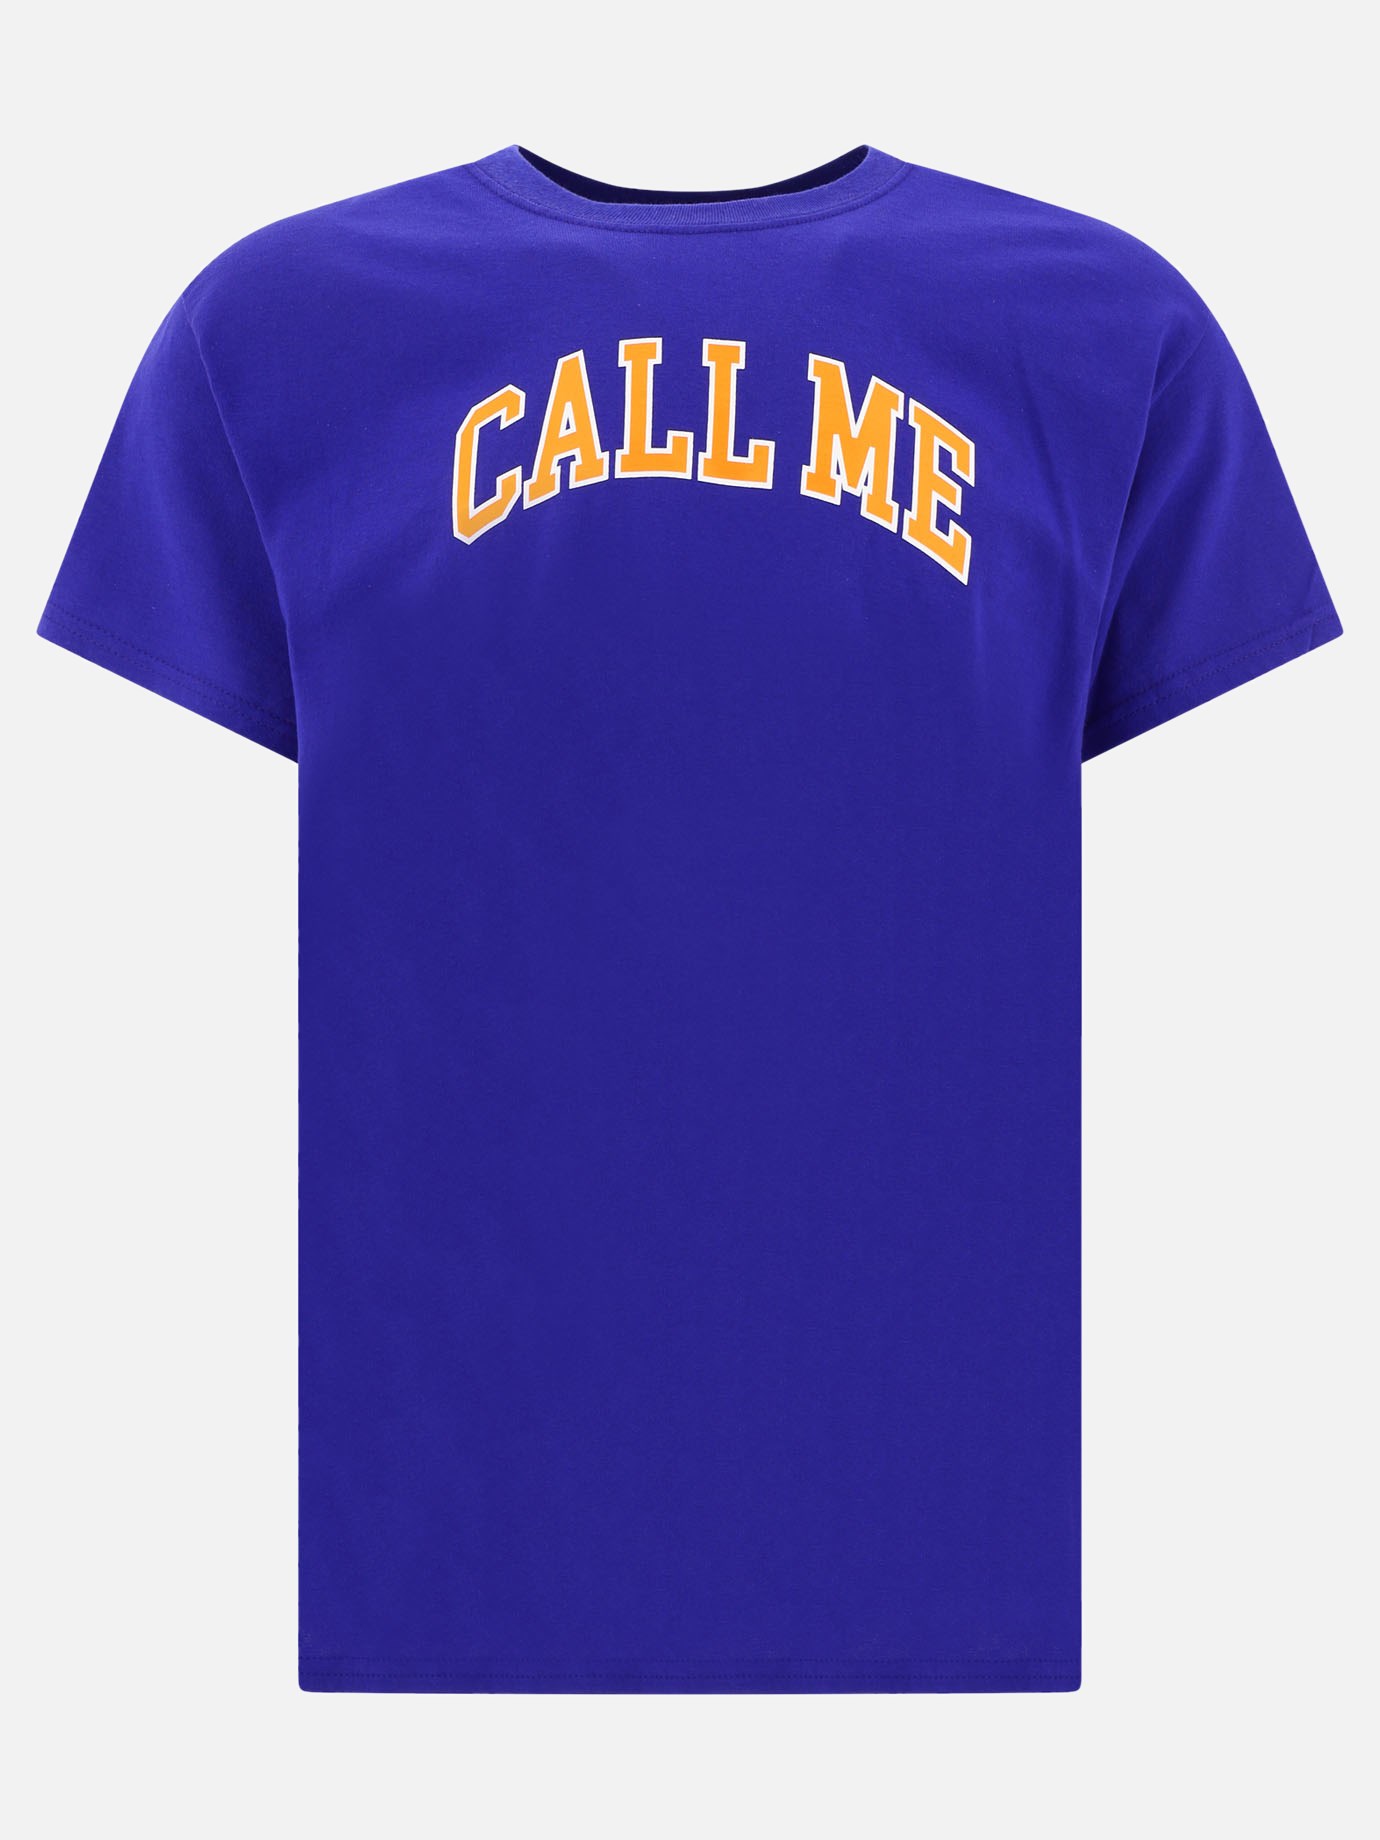  Call Me  t-shirtby Call Me 917 - 2